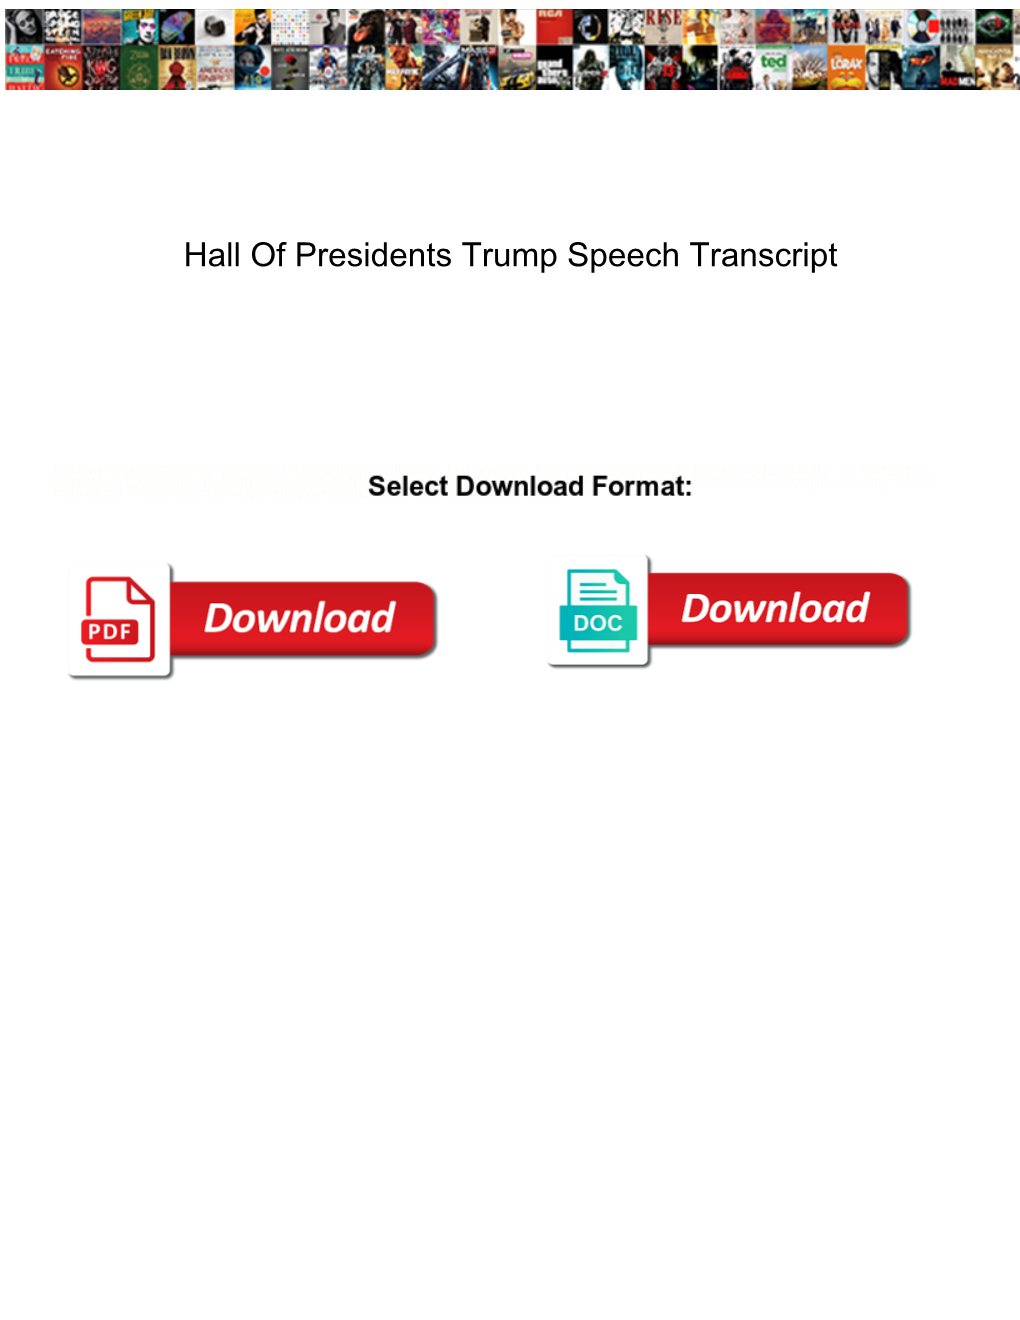 Hall of Presidents Trump Speech Transcript